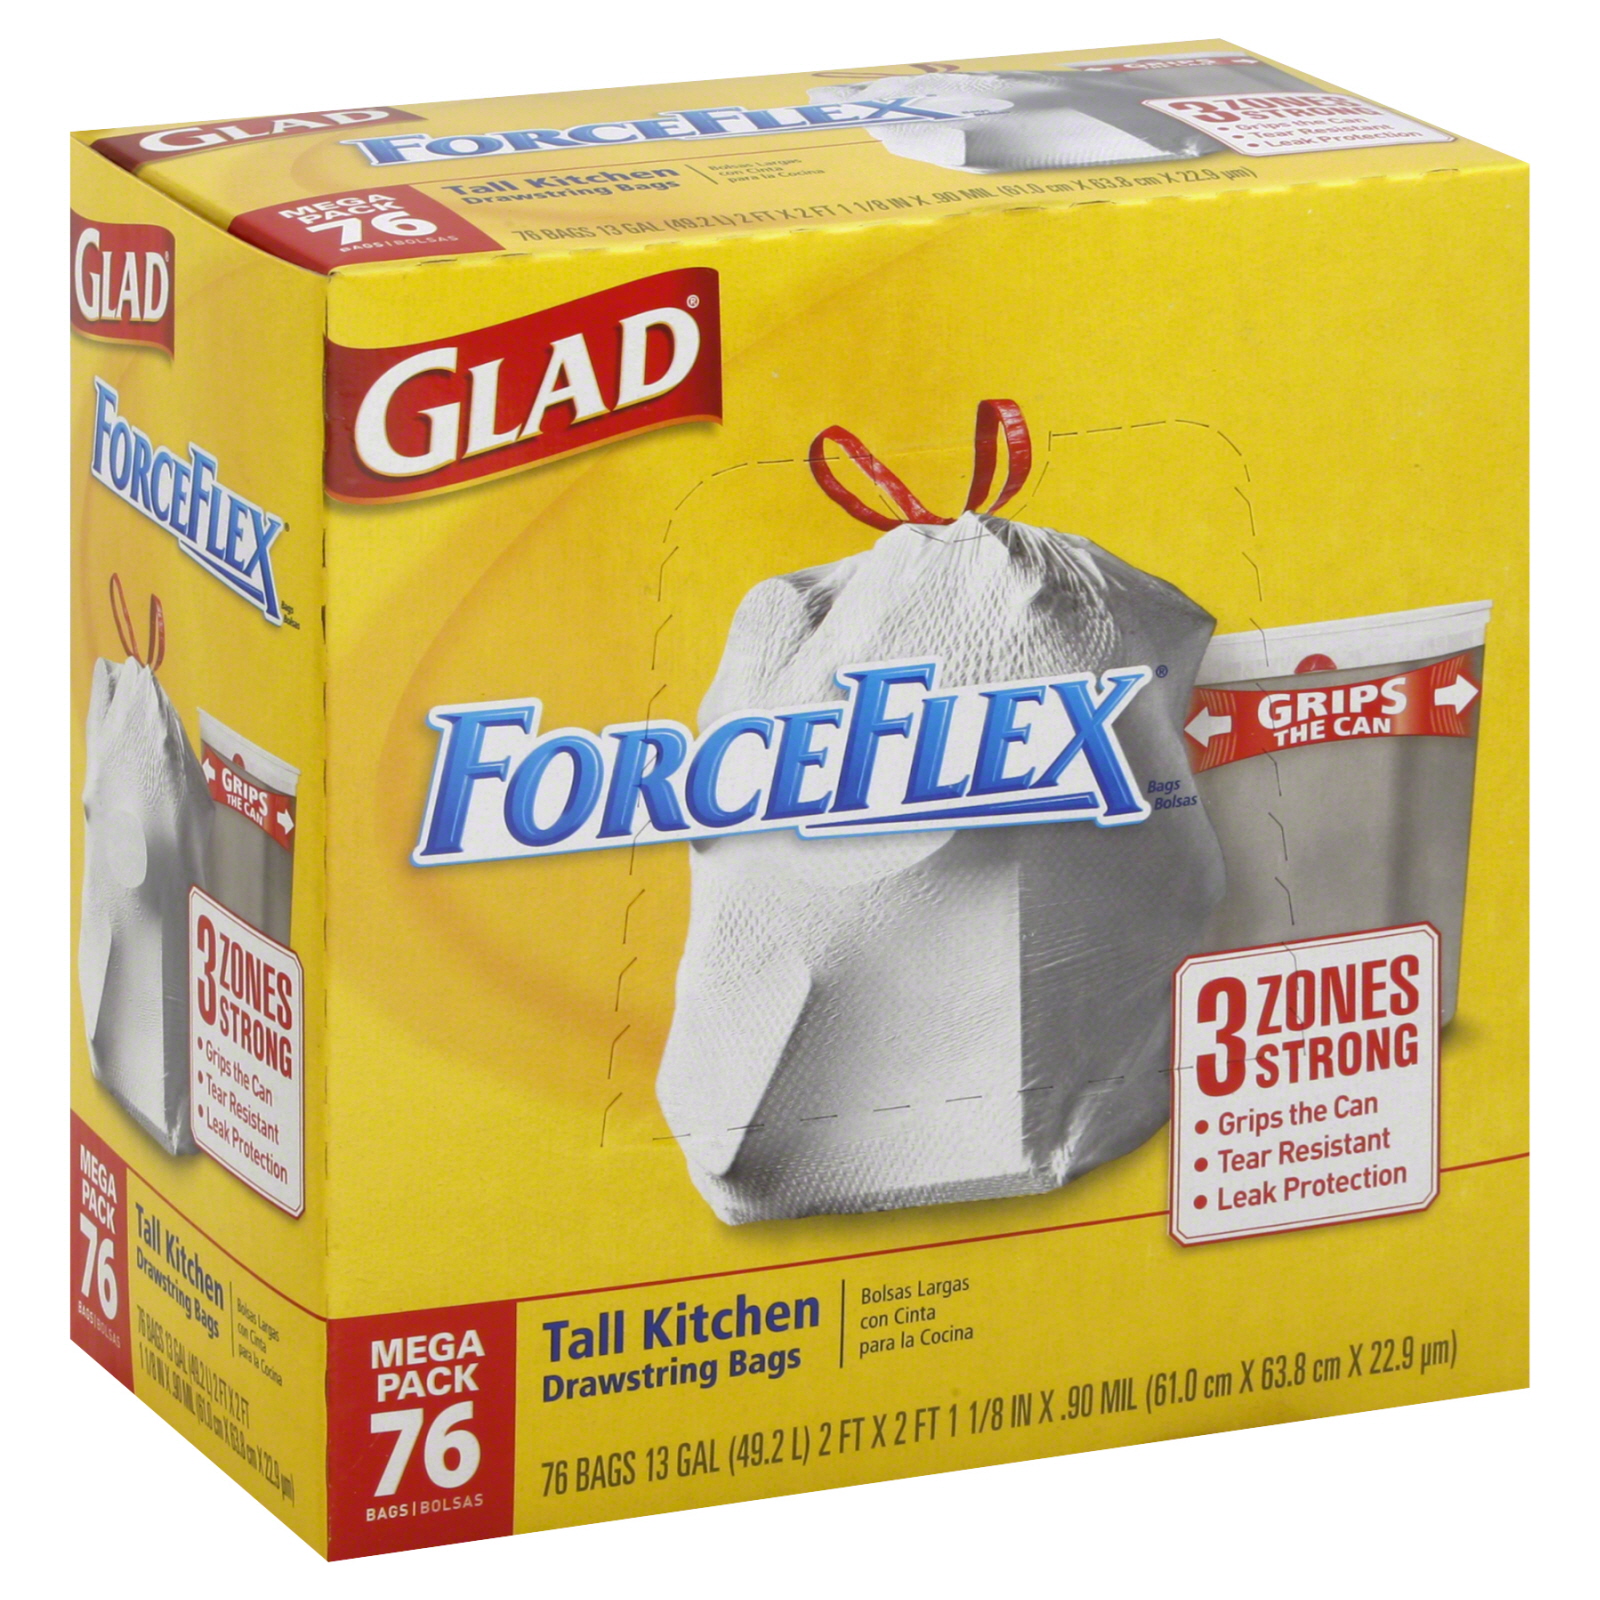 Glad ForceFlex Tall Kitchen Drawstring Trash Bags - 13 gal